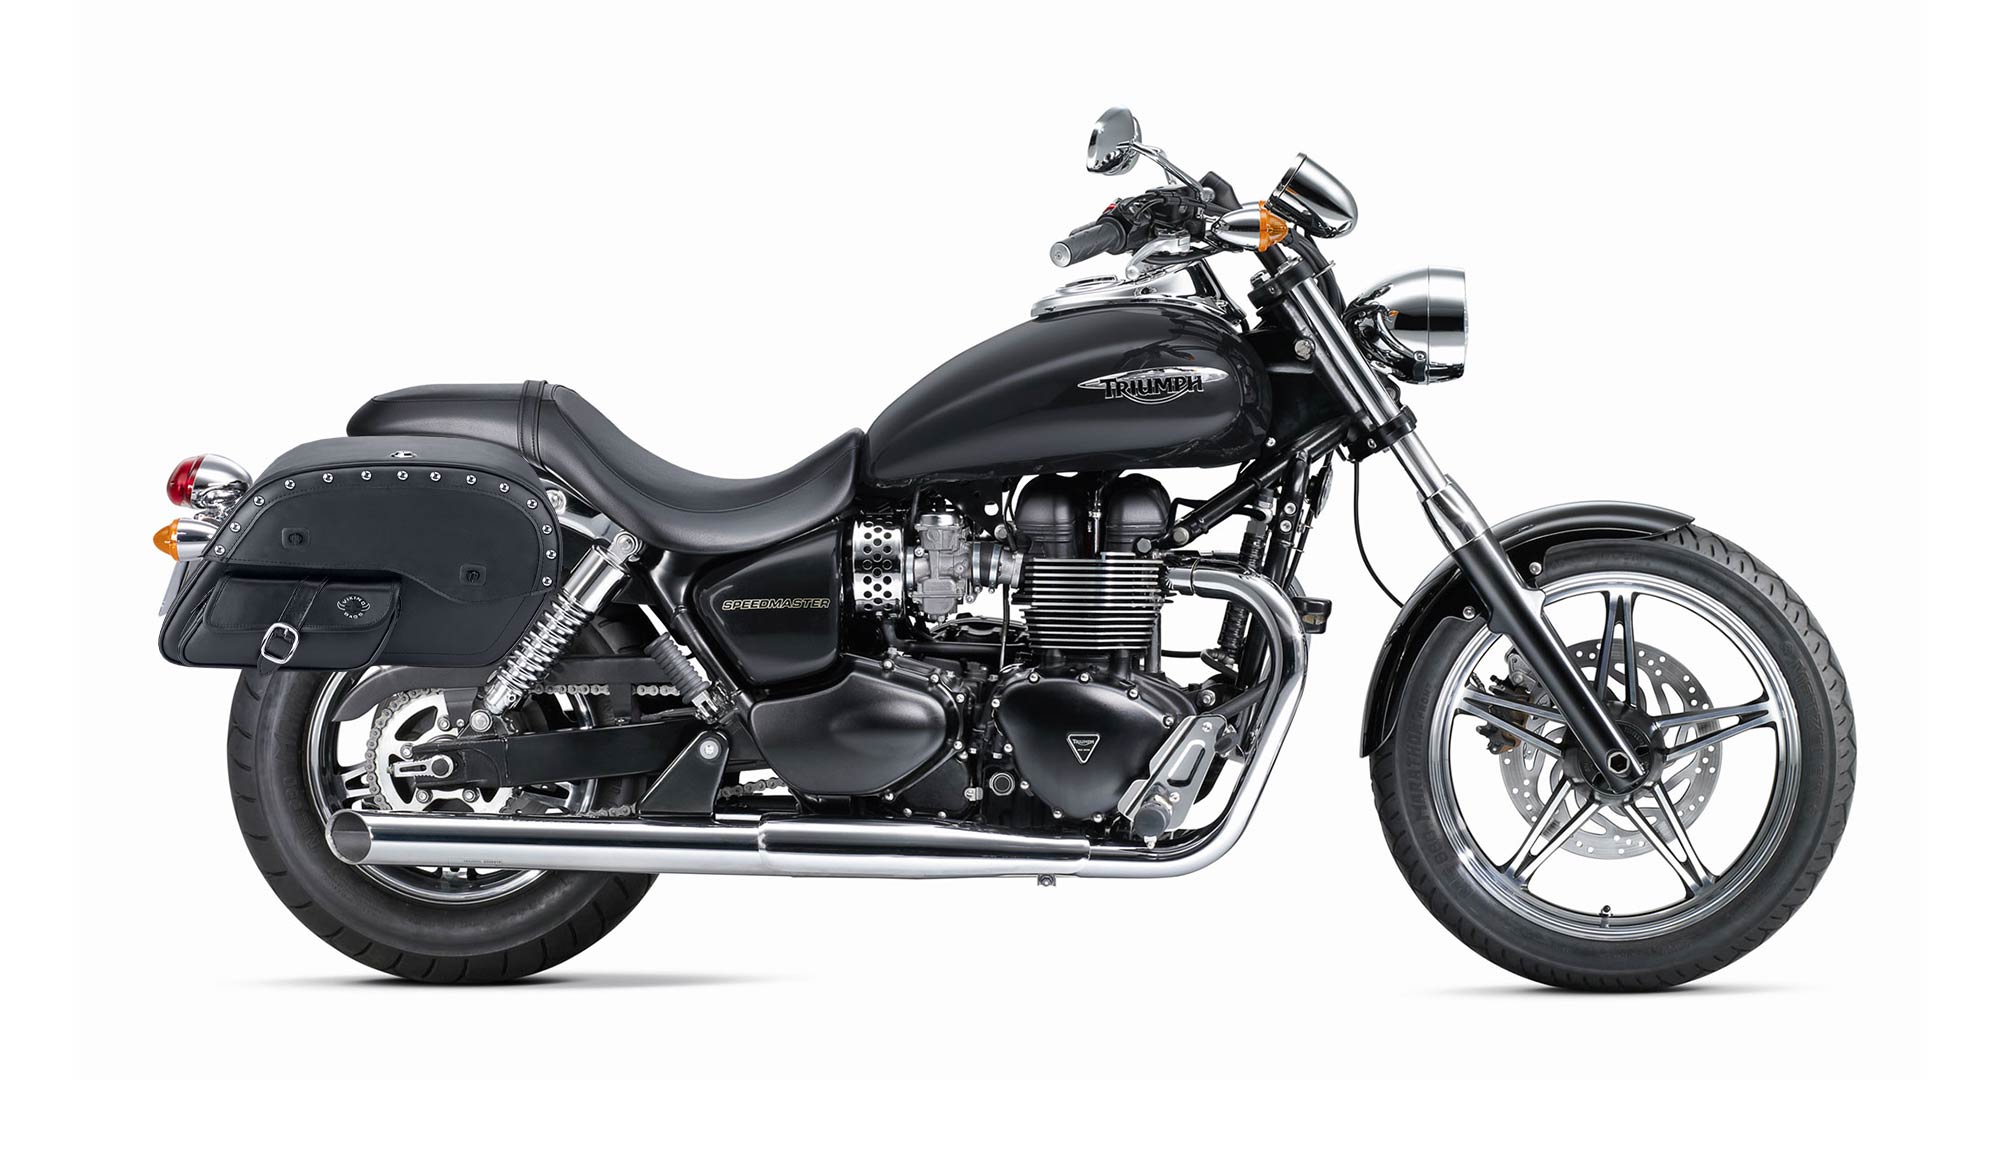 Viking Side Pocket Large Studded Triumph Speedmaster Leather Motorcycle Saddlebags on Bike Photo @expand